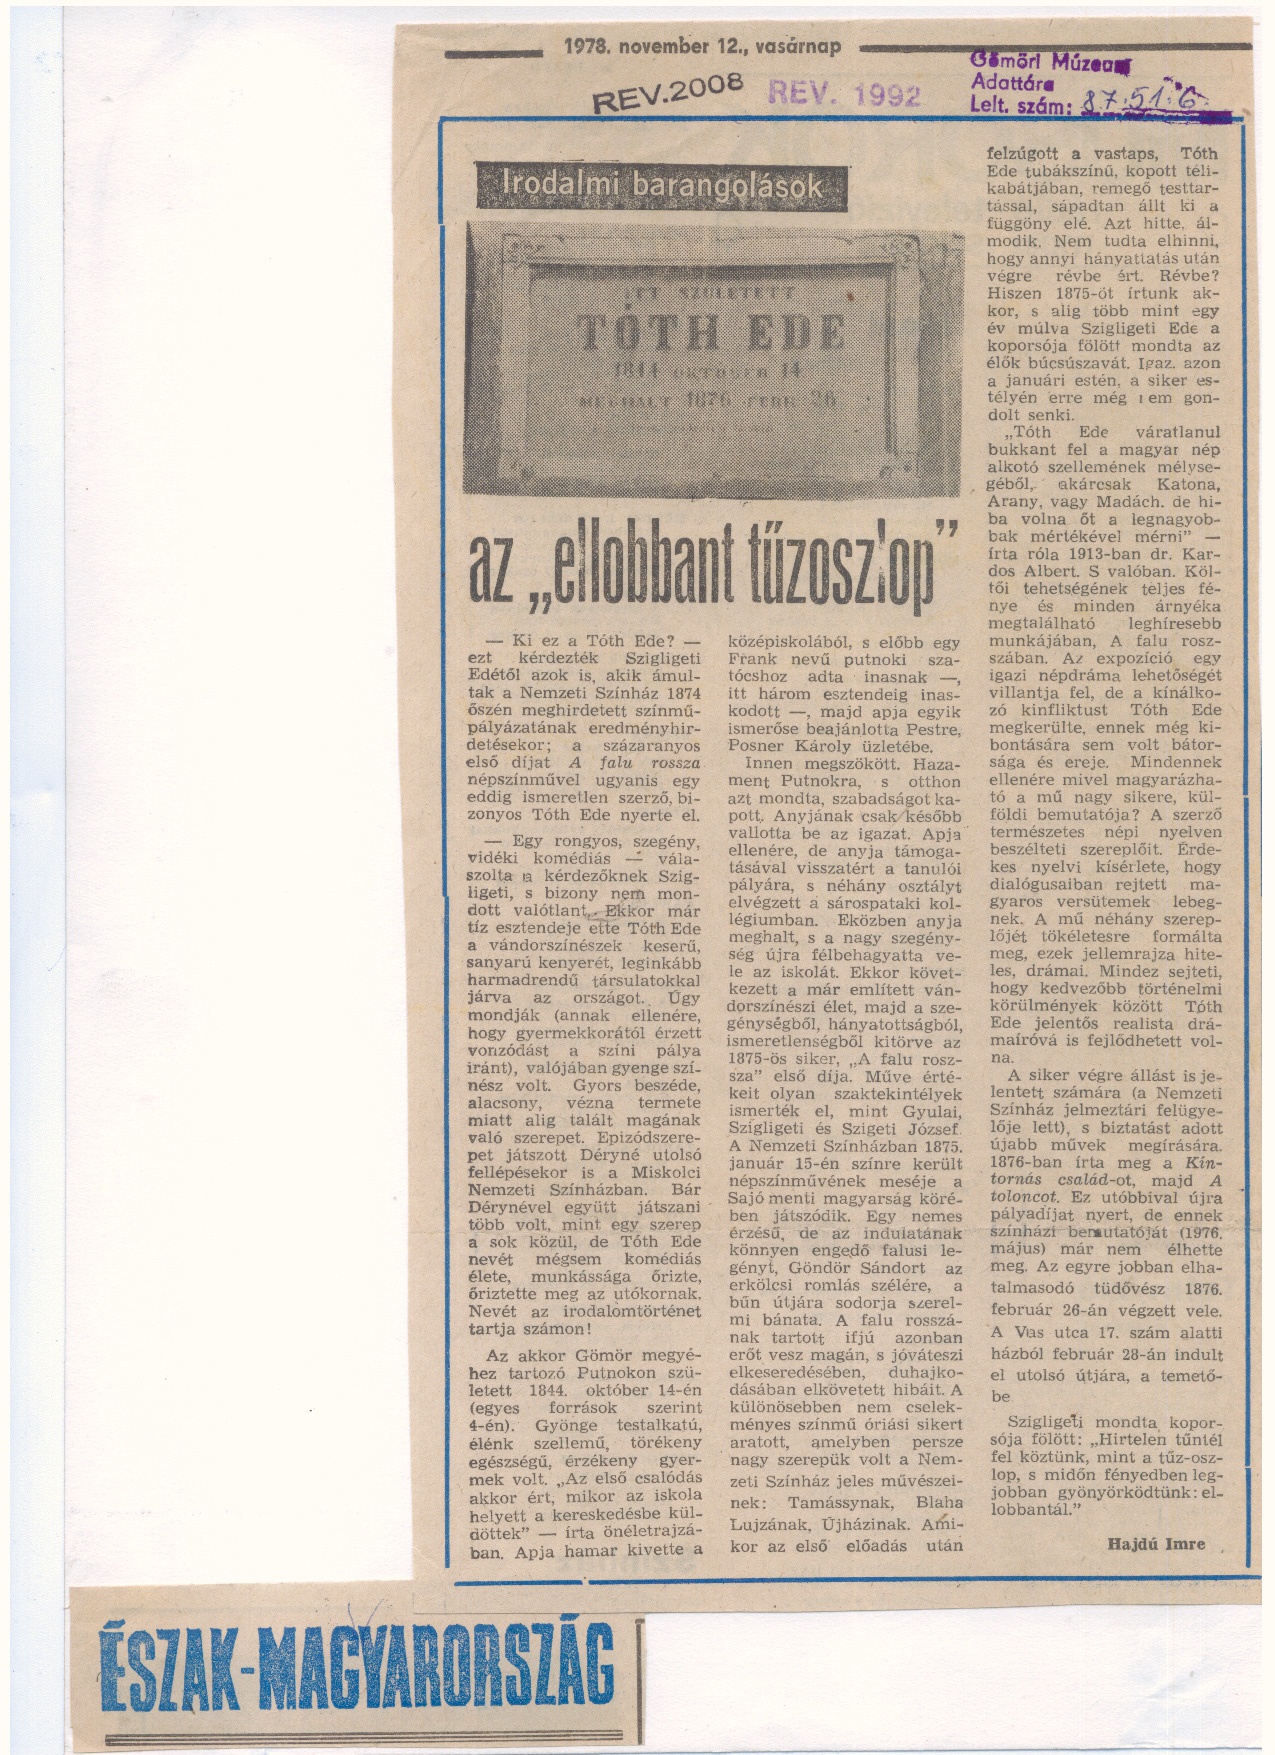 Tóth Ede dokumentumok,lapkivágás /ÉM. 1978.nov.12./ (Gömöri Múzeum, Putnok CC BY-NC-SA)